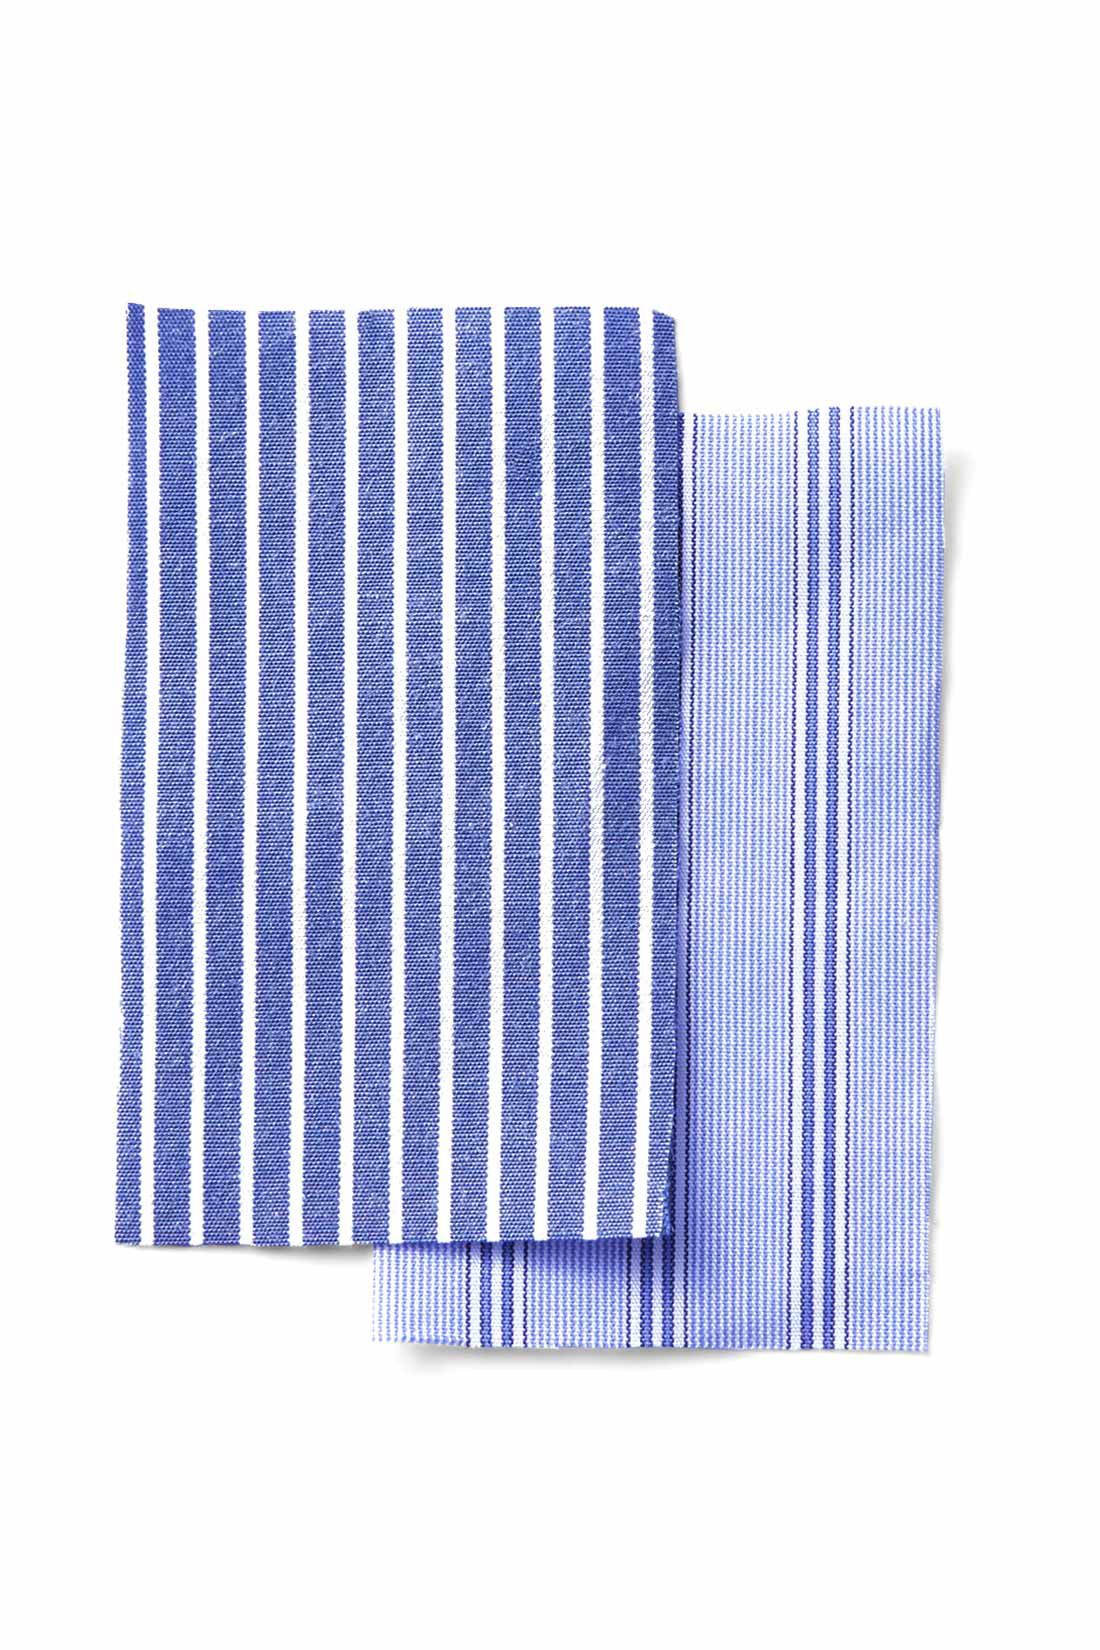 MEDE19F|MEDE19F　ミックスストライプシャツ〈ブルー〉|きれいな表面感でしわになりにくい、ポリエステル・綿混の通年素材です。